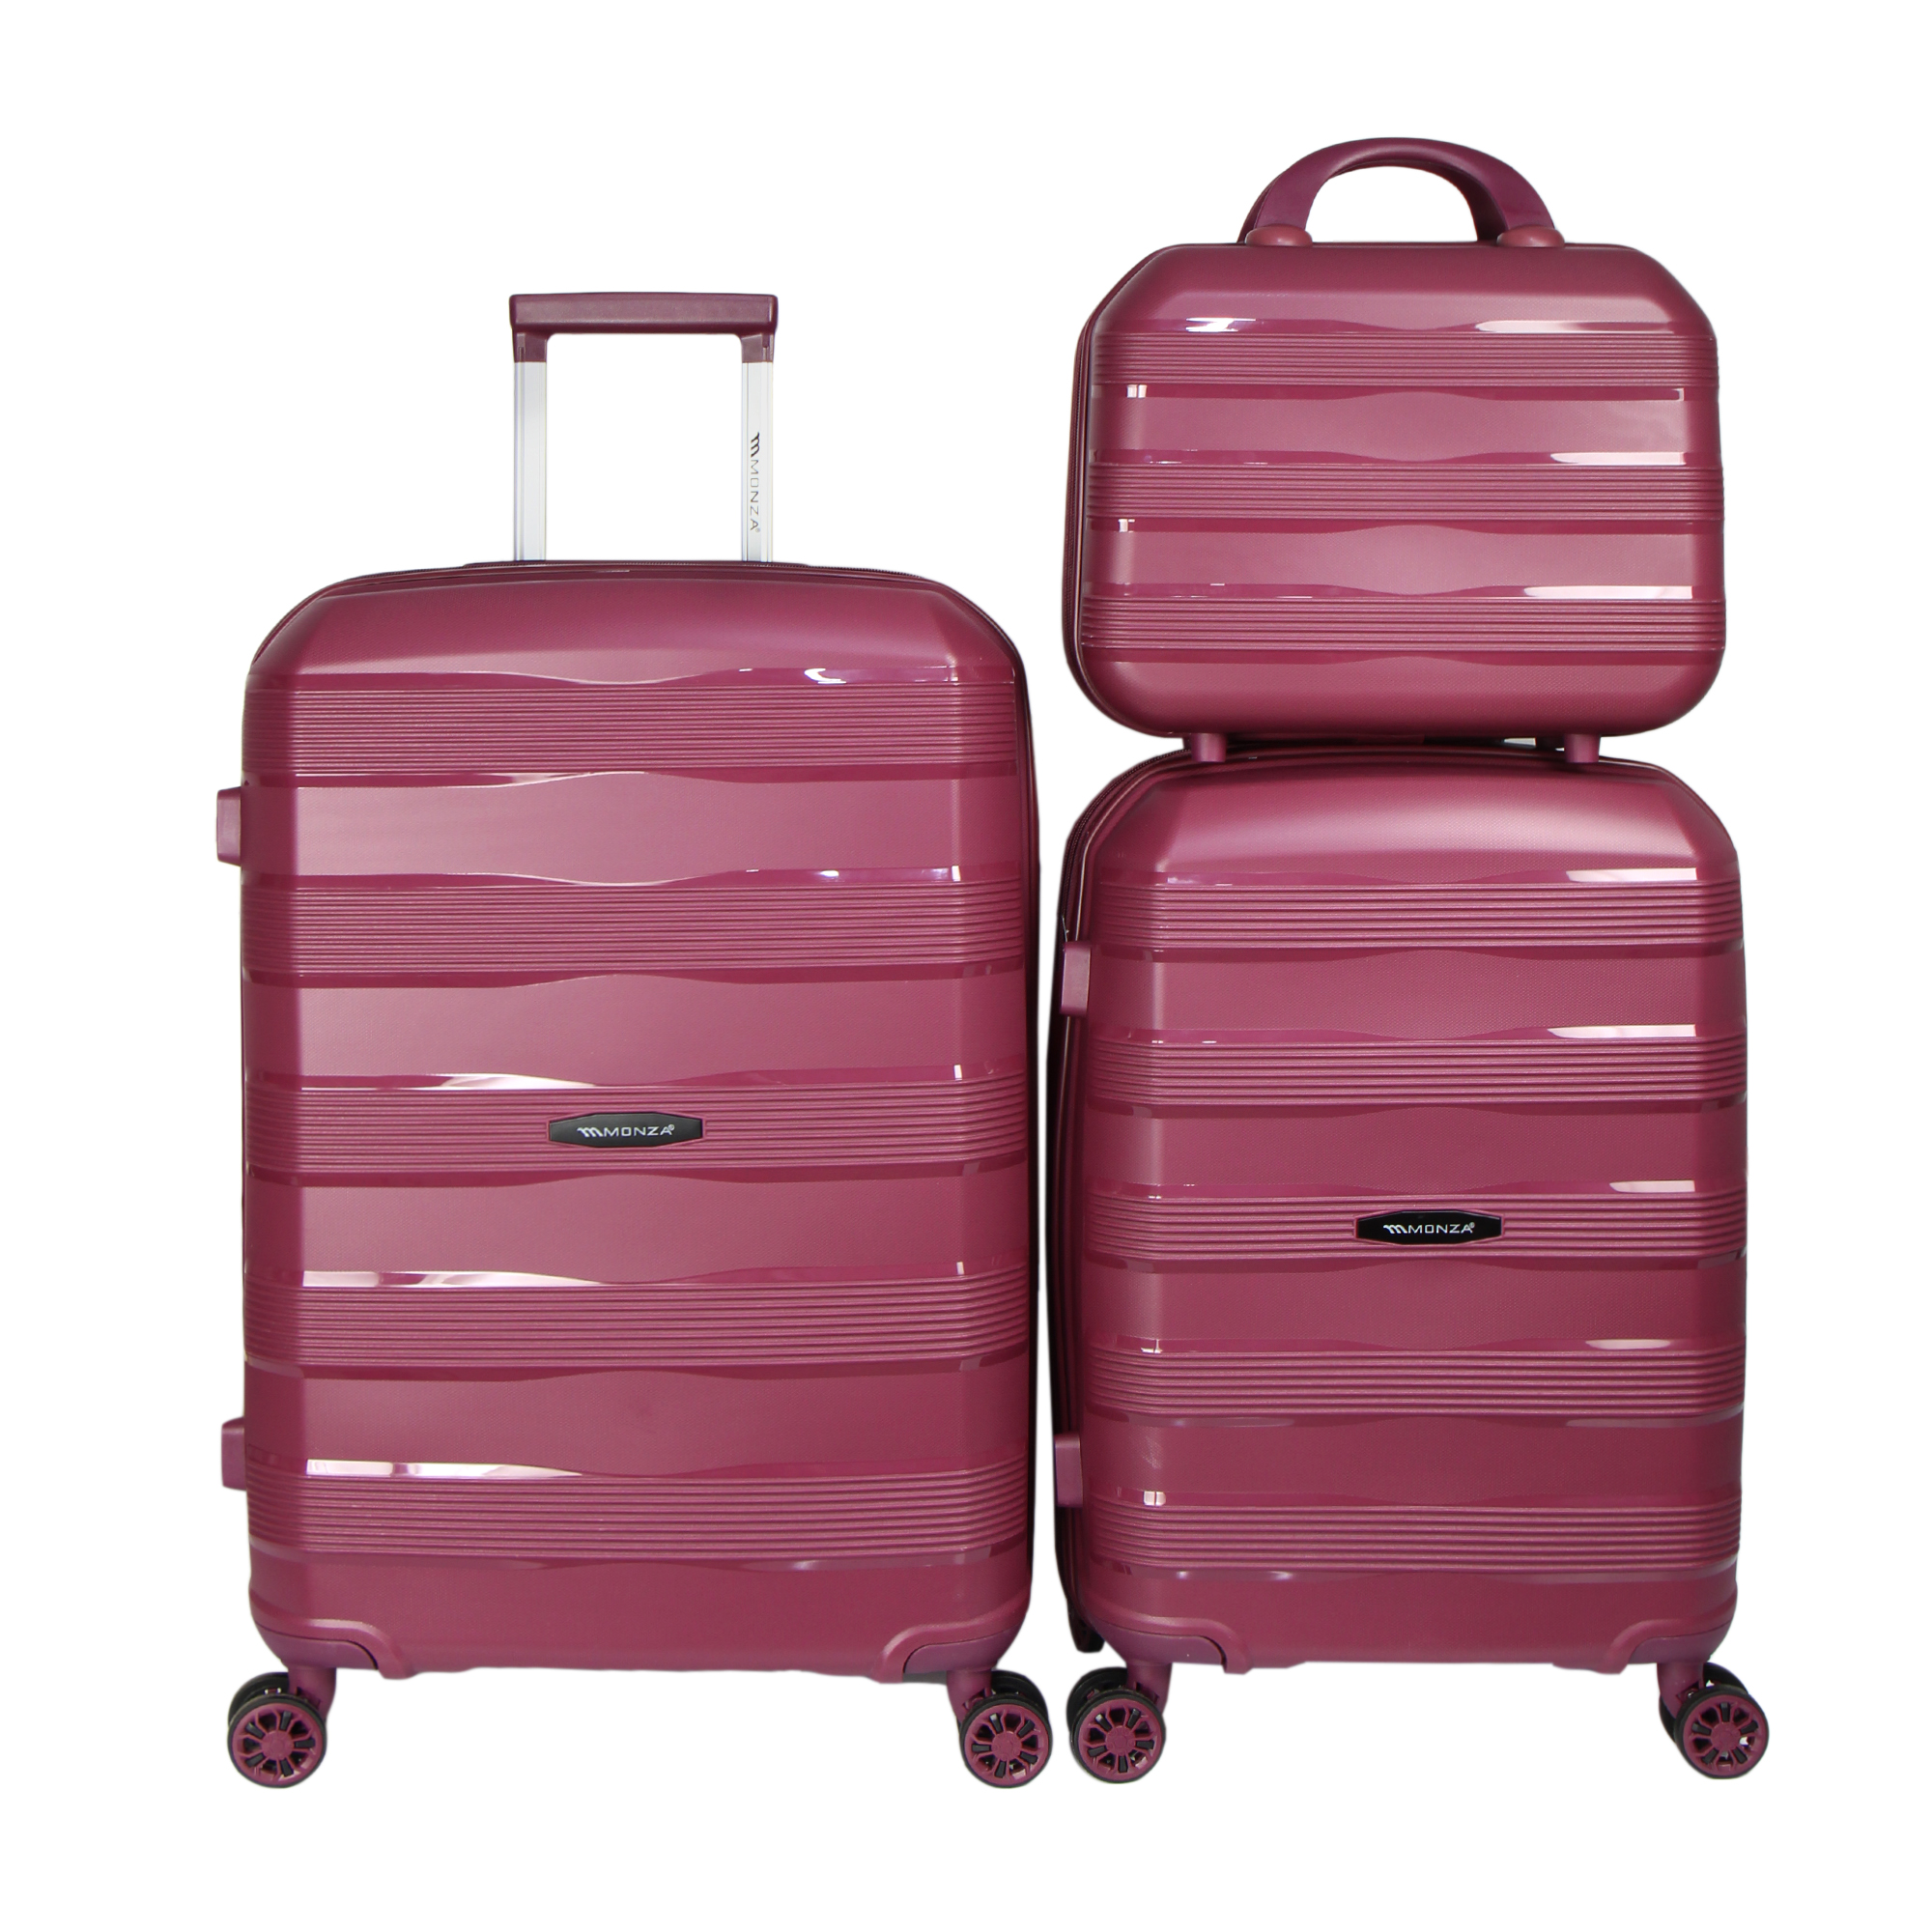 نکته خرید - قیمت روز مجموعه سه عددی چمدان مونزا مدل C01012 خرید